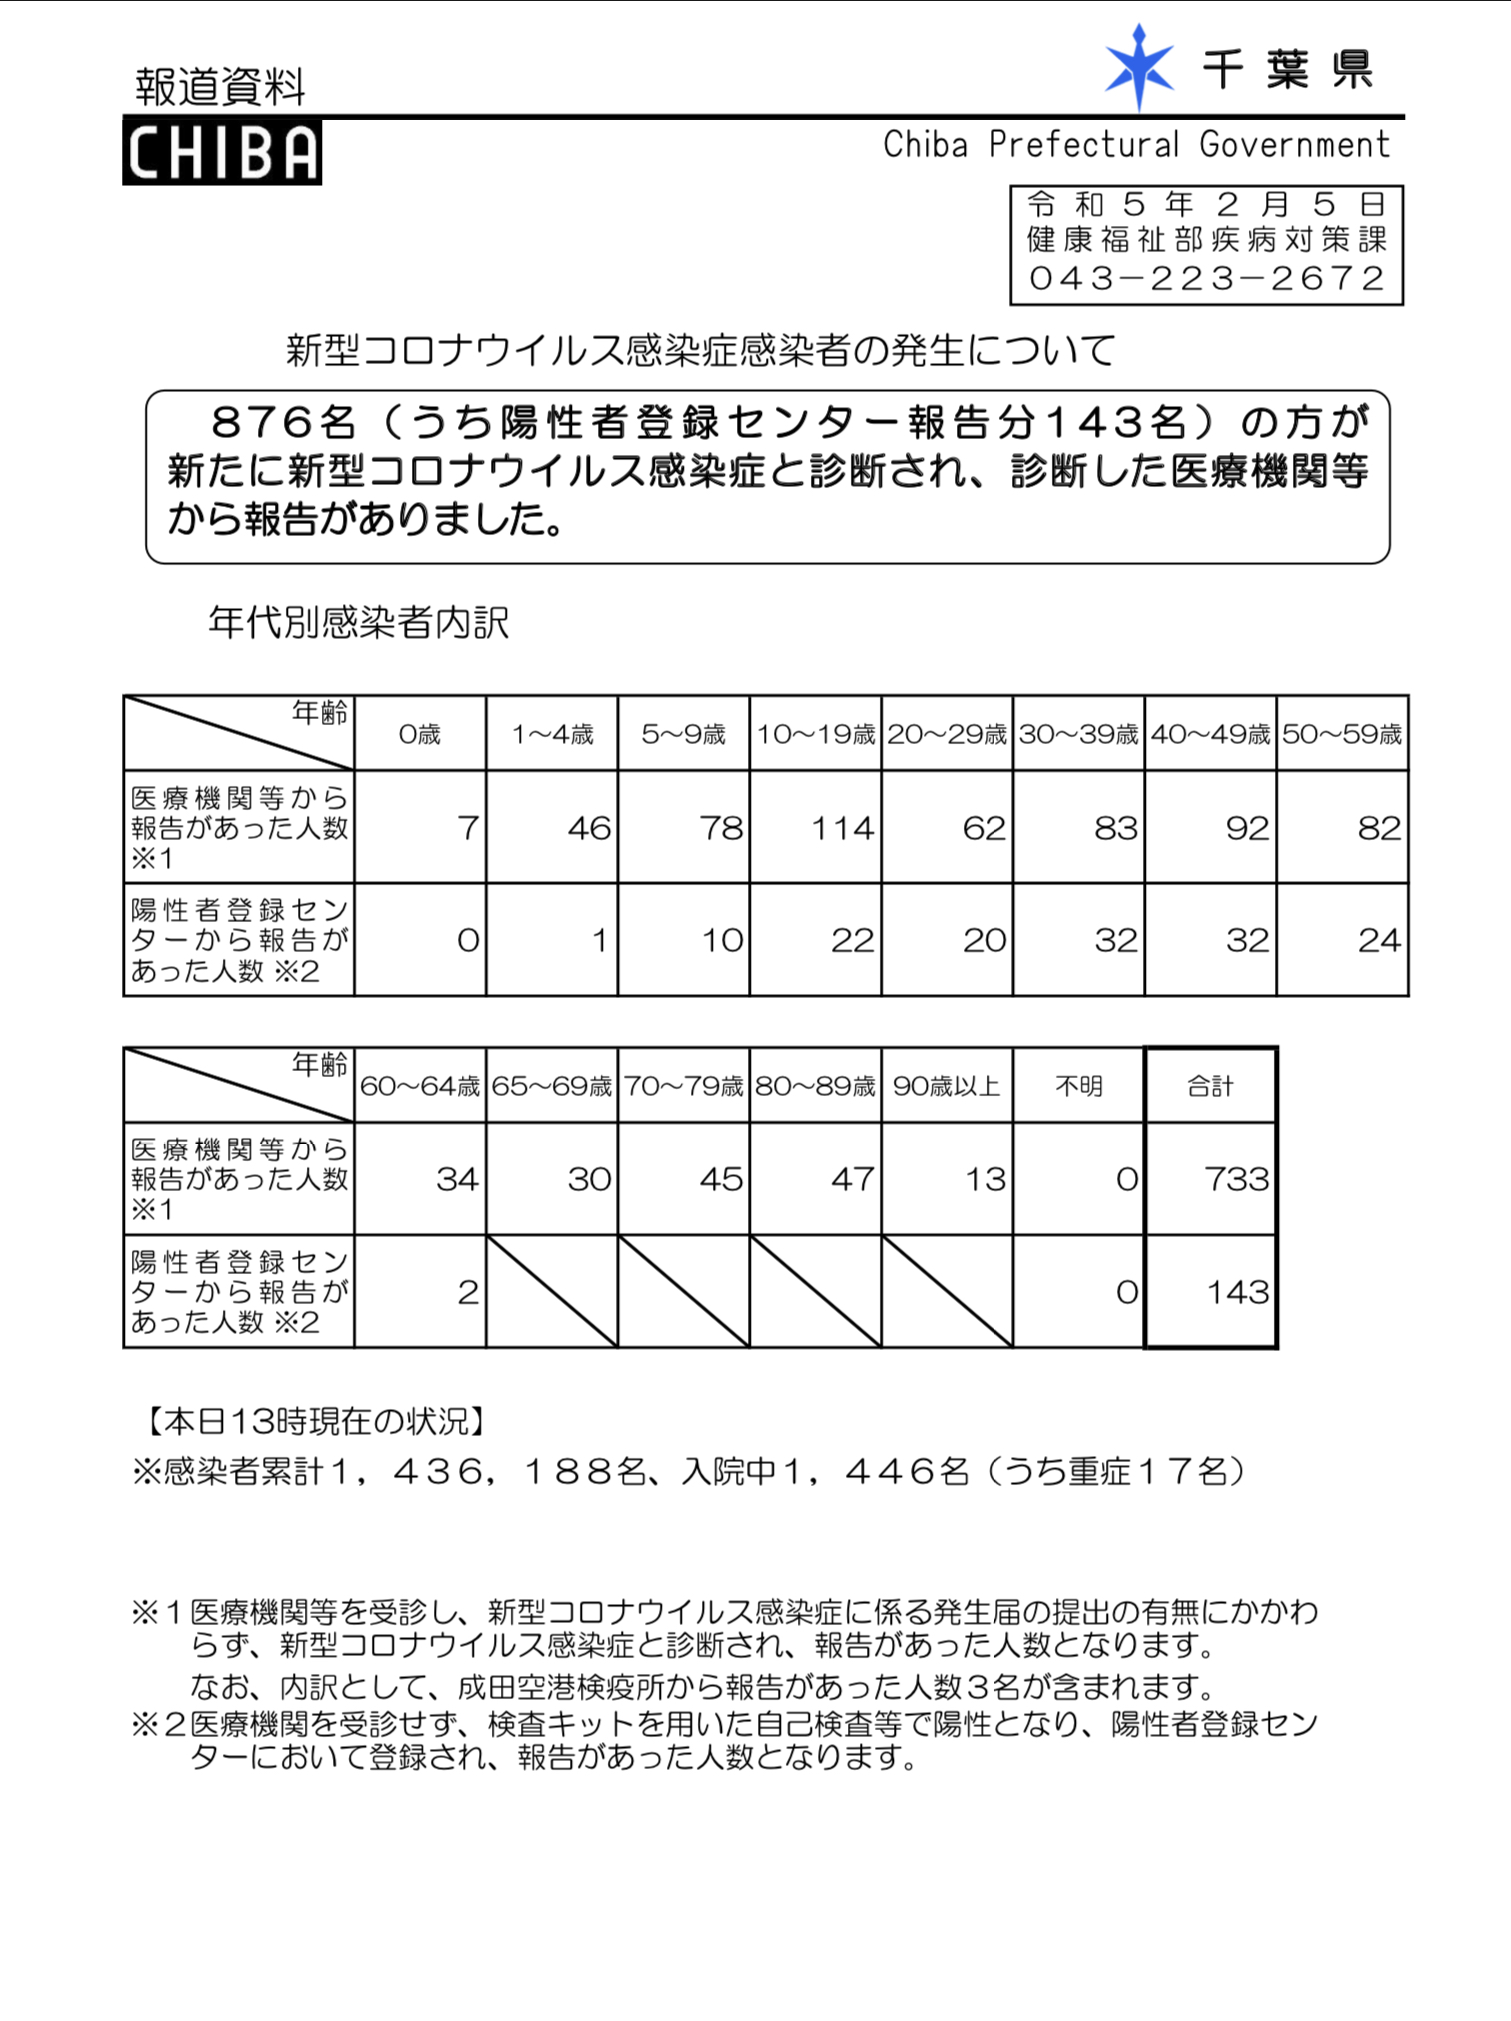 2023年2月5日千葉県新型コロナウイルス感染症情報